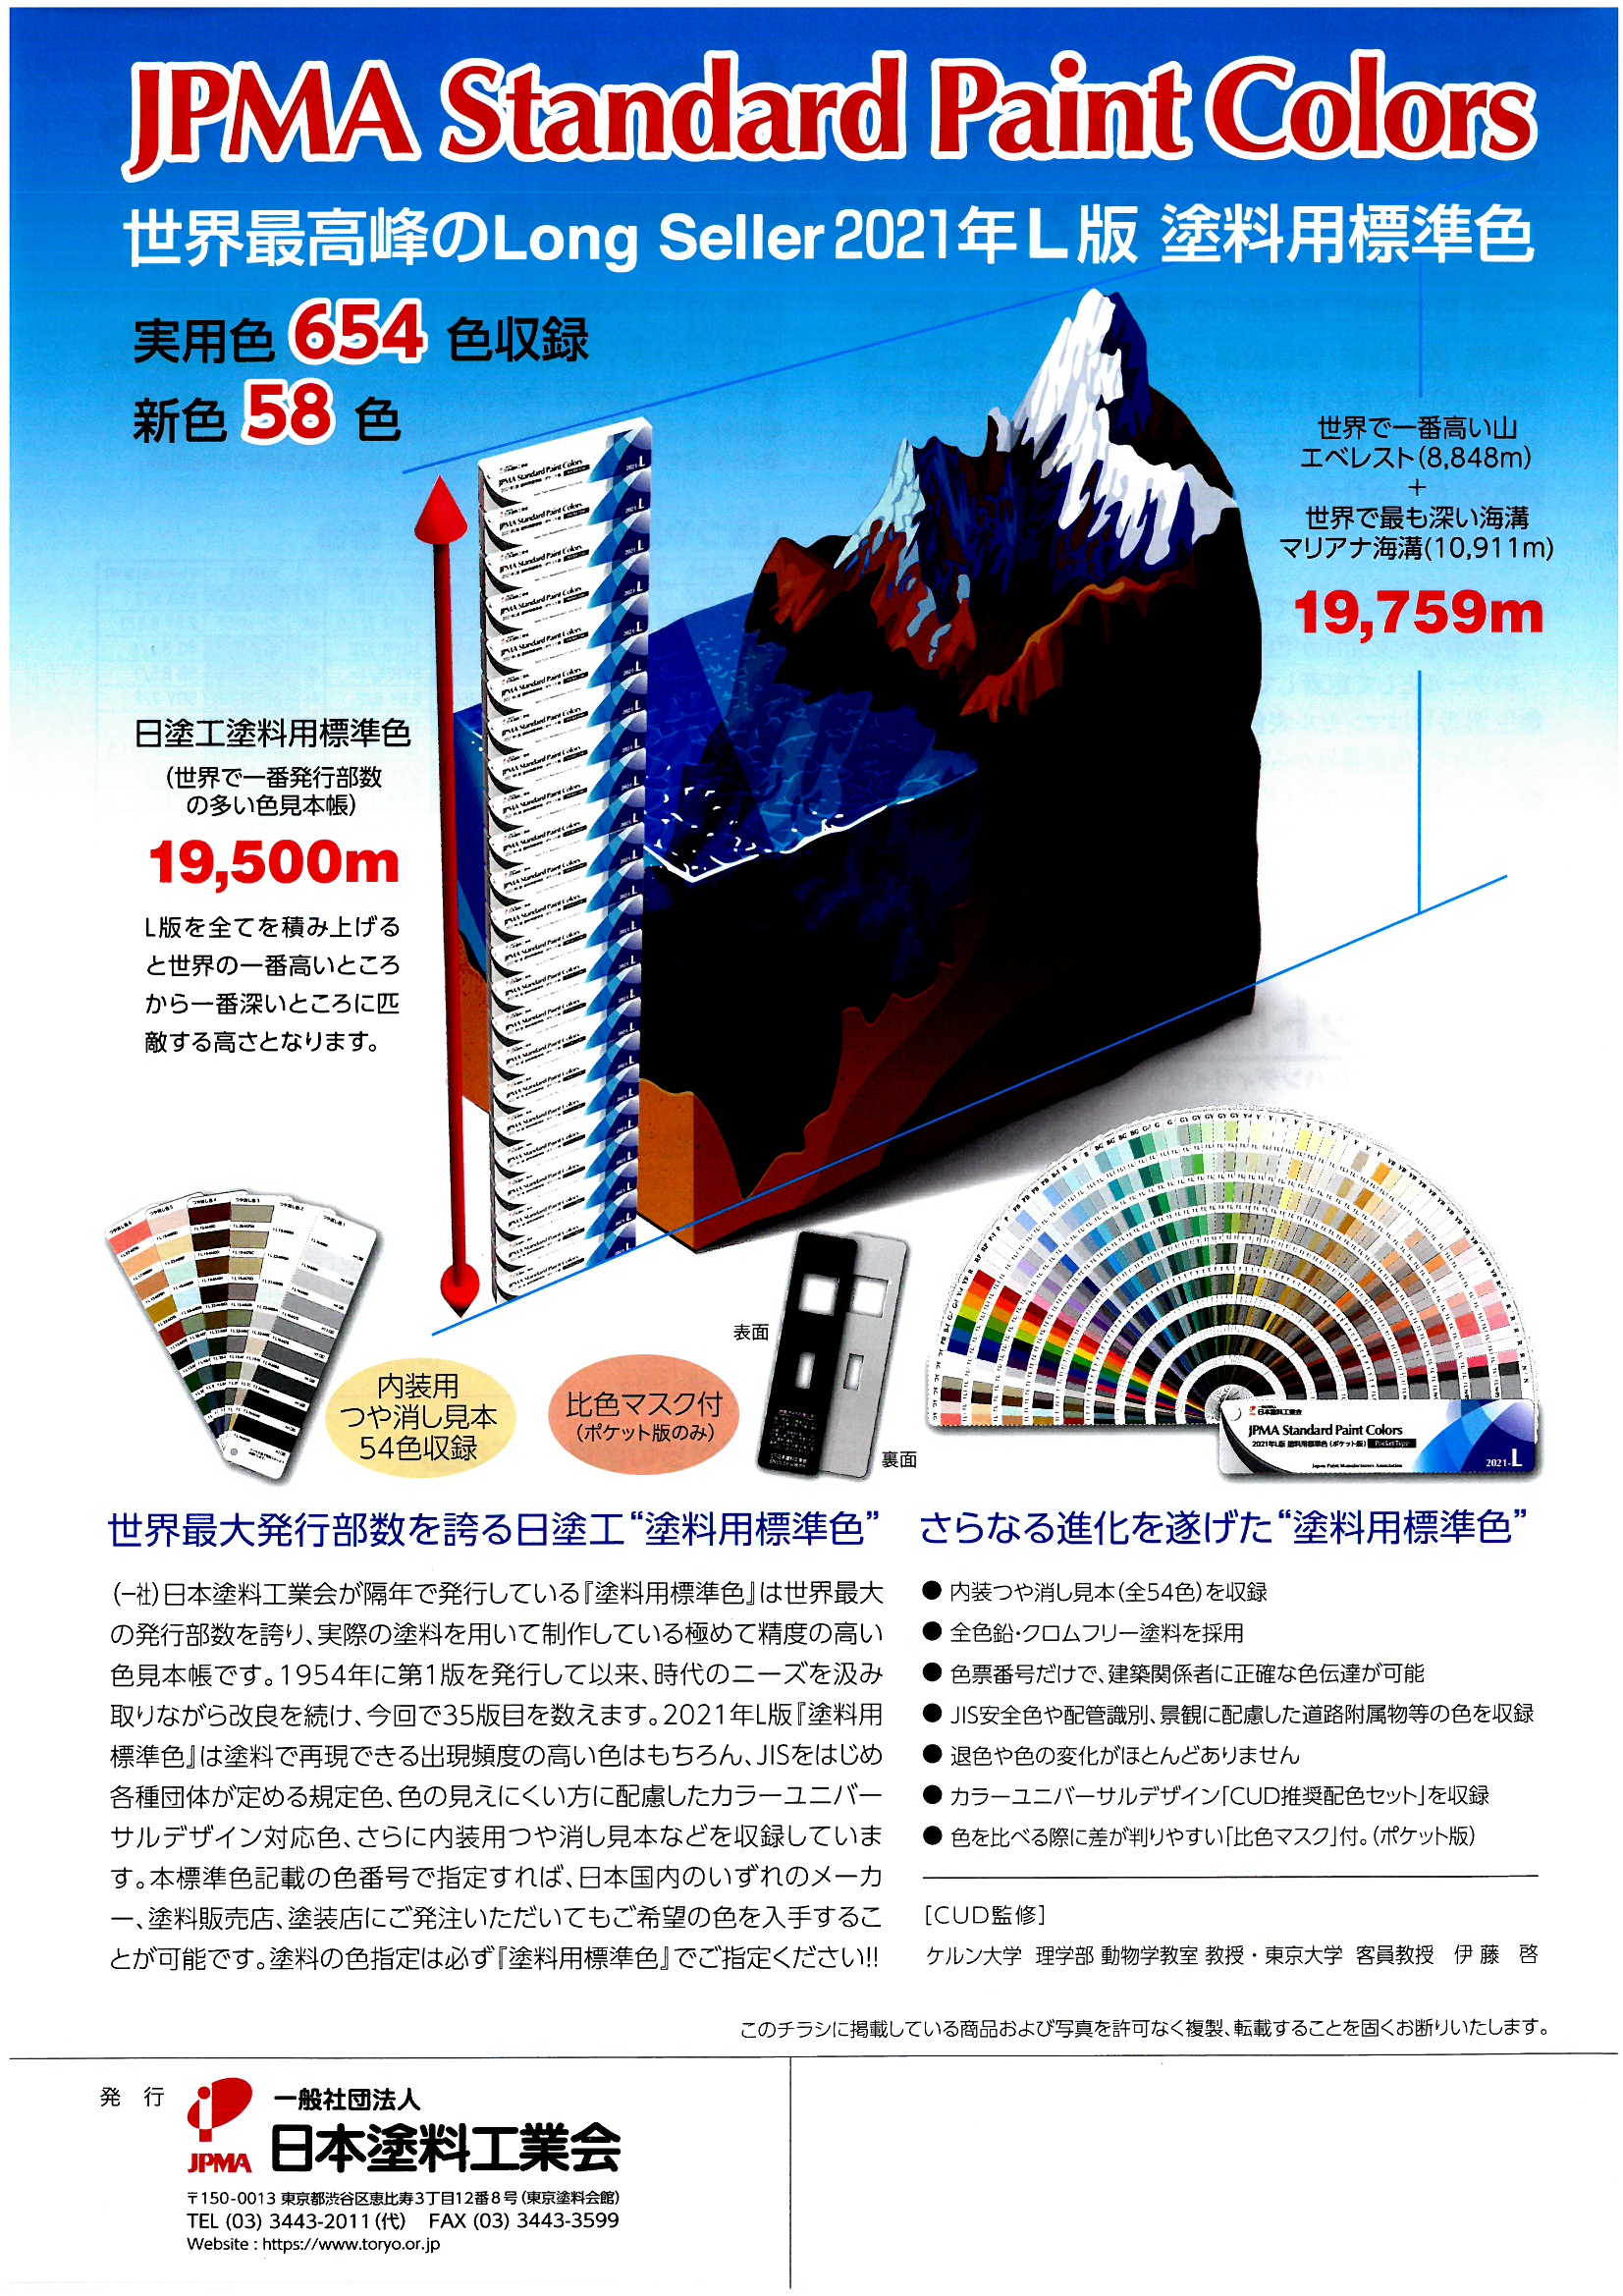 日本塗料工業会 JPMA 日塗工色見本帳2021年L版のご案内 | 株式会社